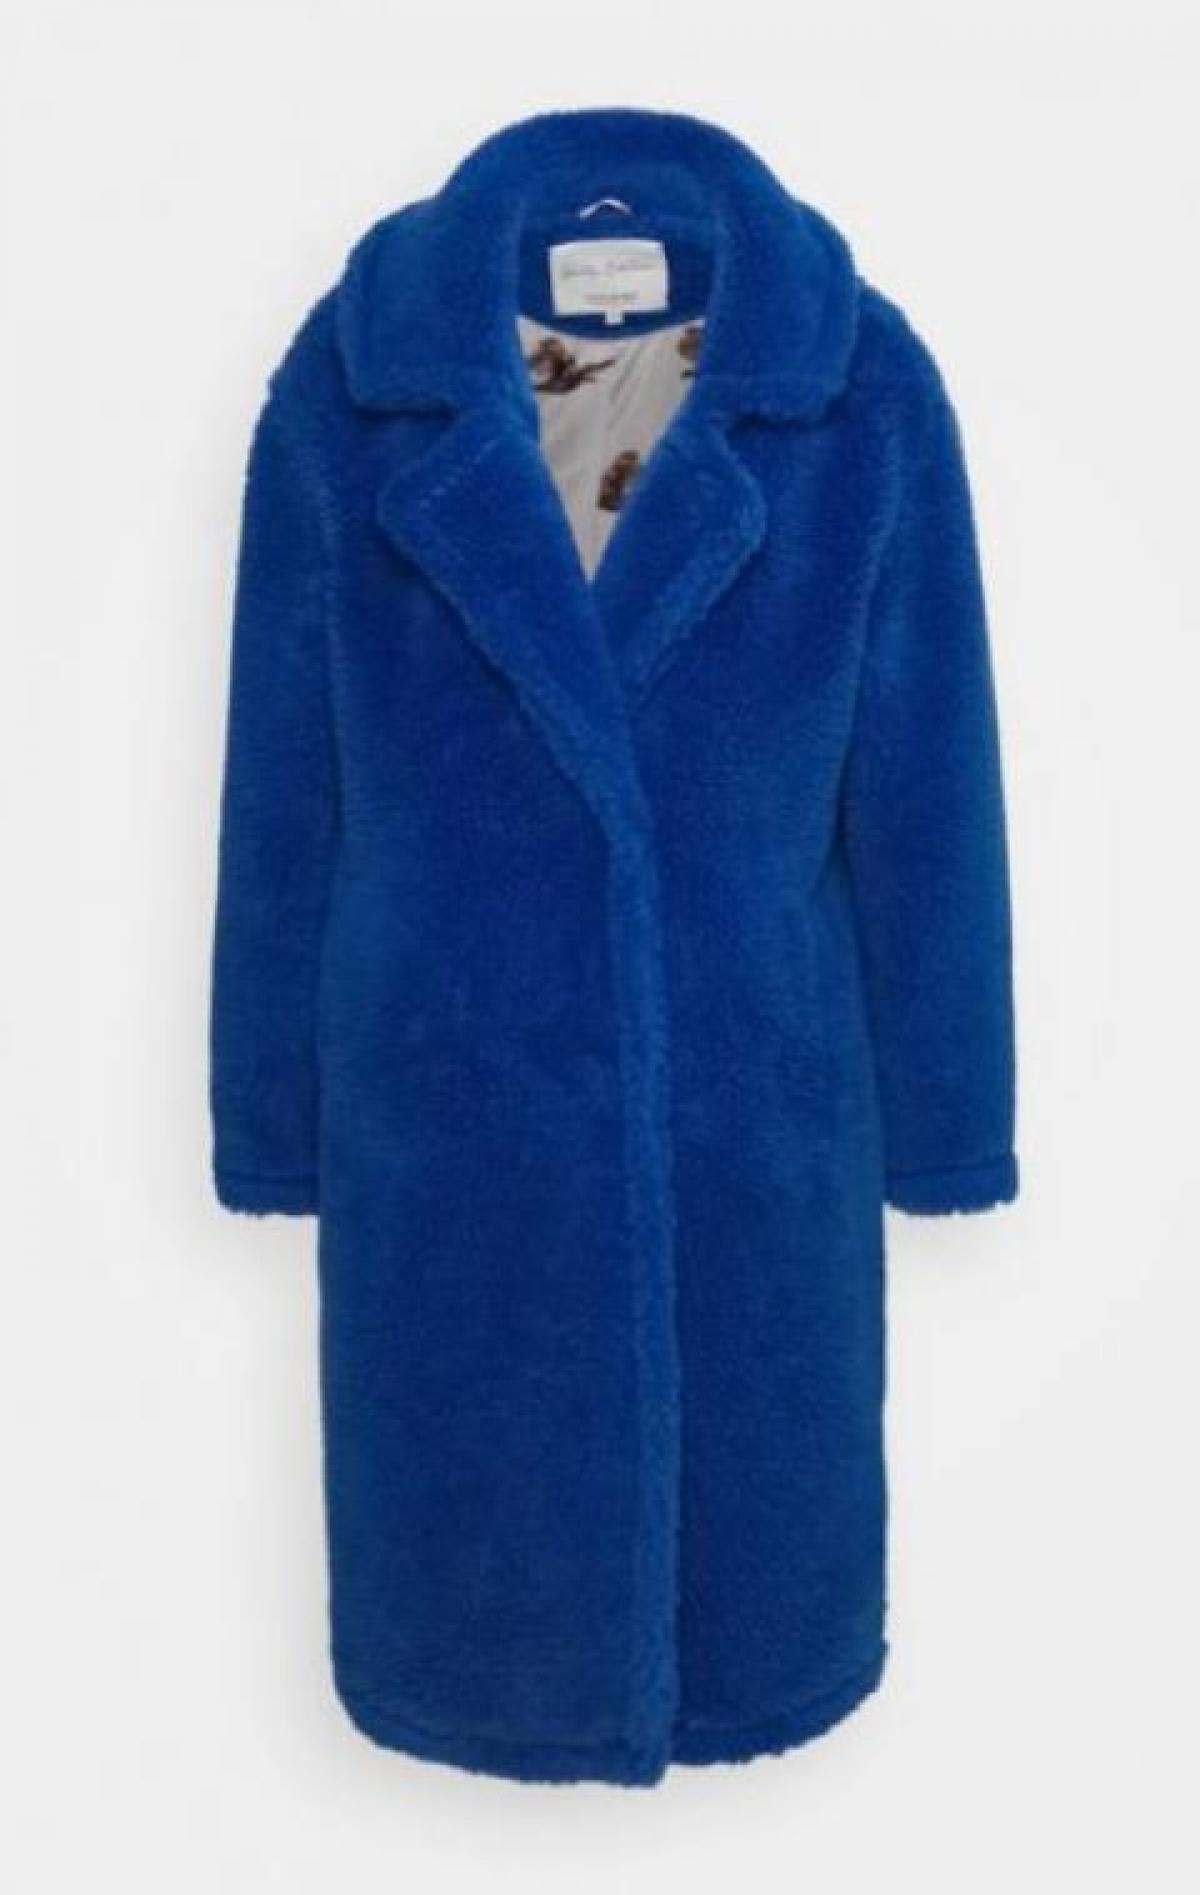 Le manteau bleu électrique